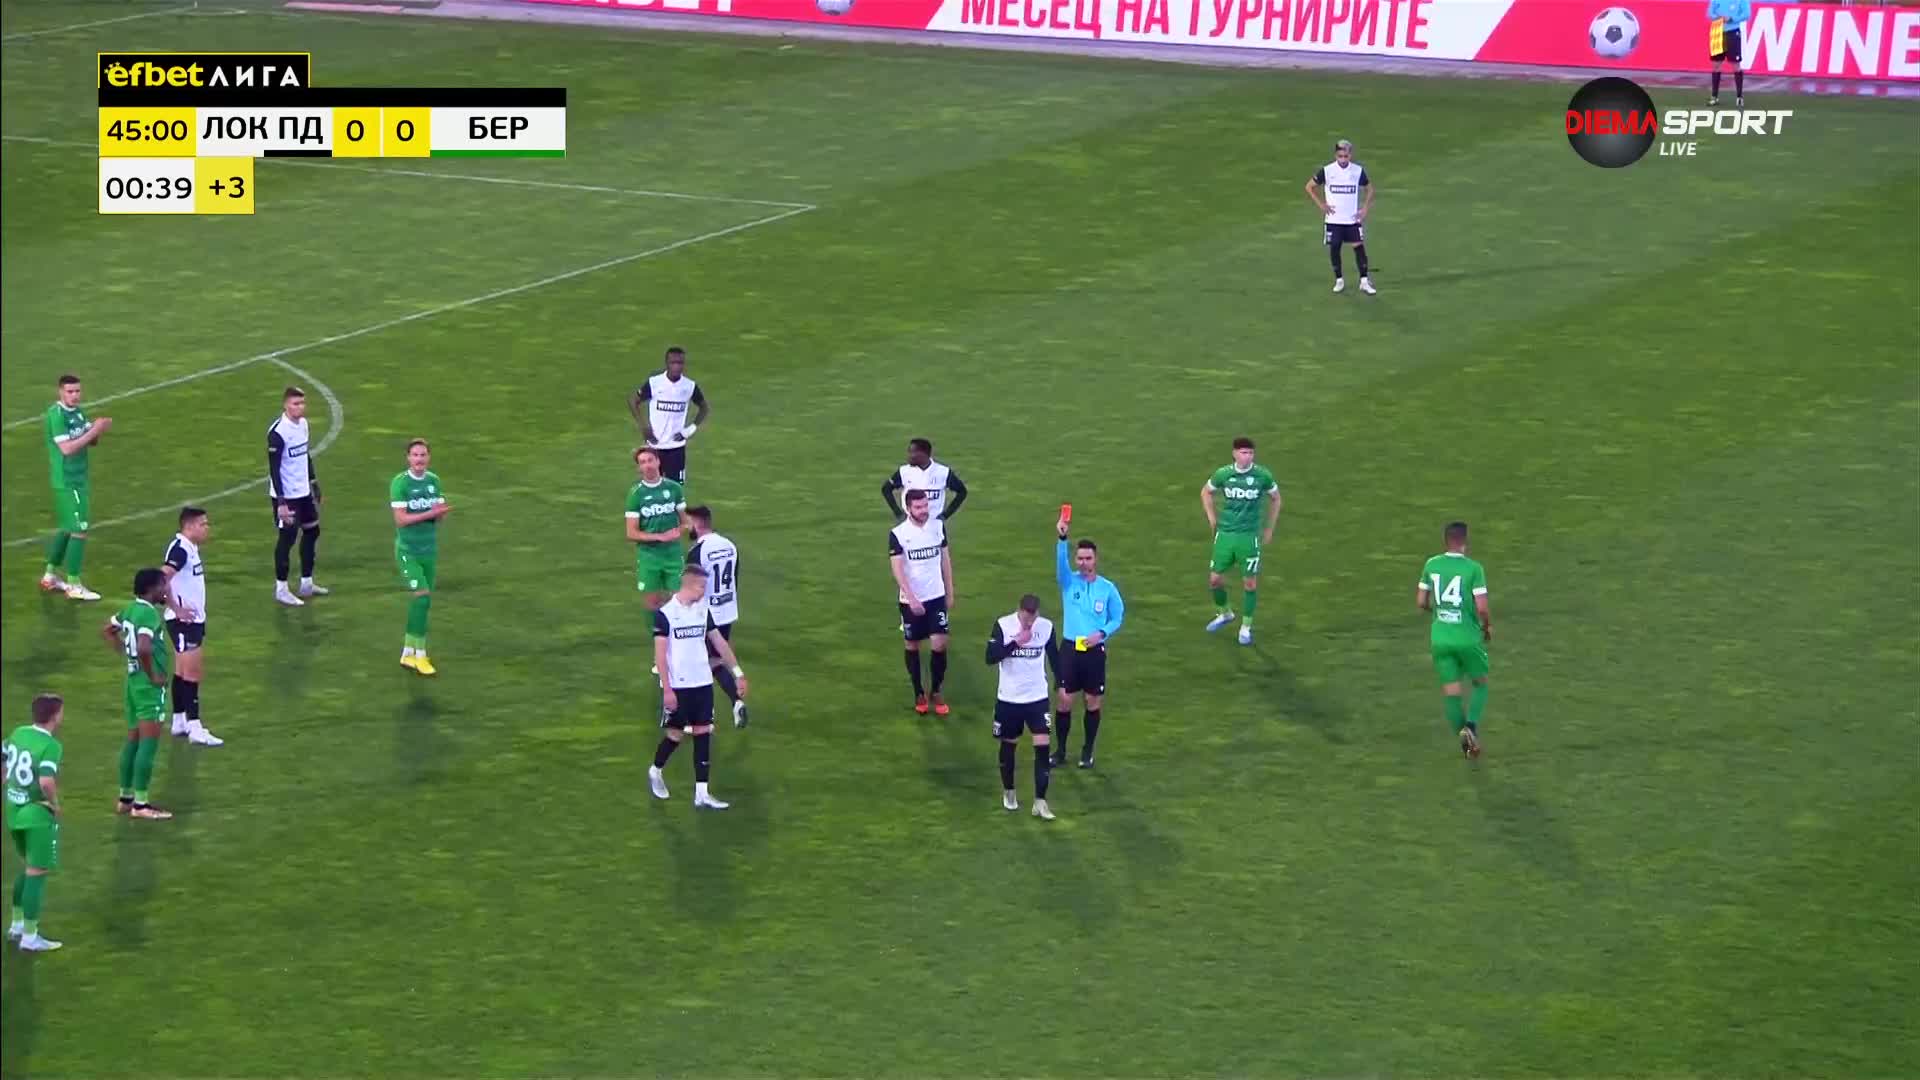 Локомотив Пловдив остава с 10 души на терена след червен картон на Йосип Томашевич